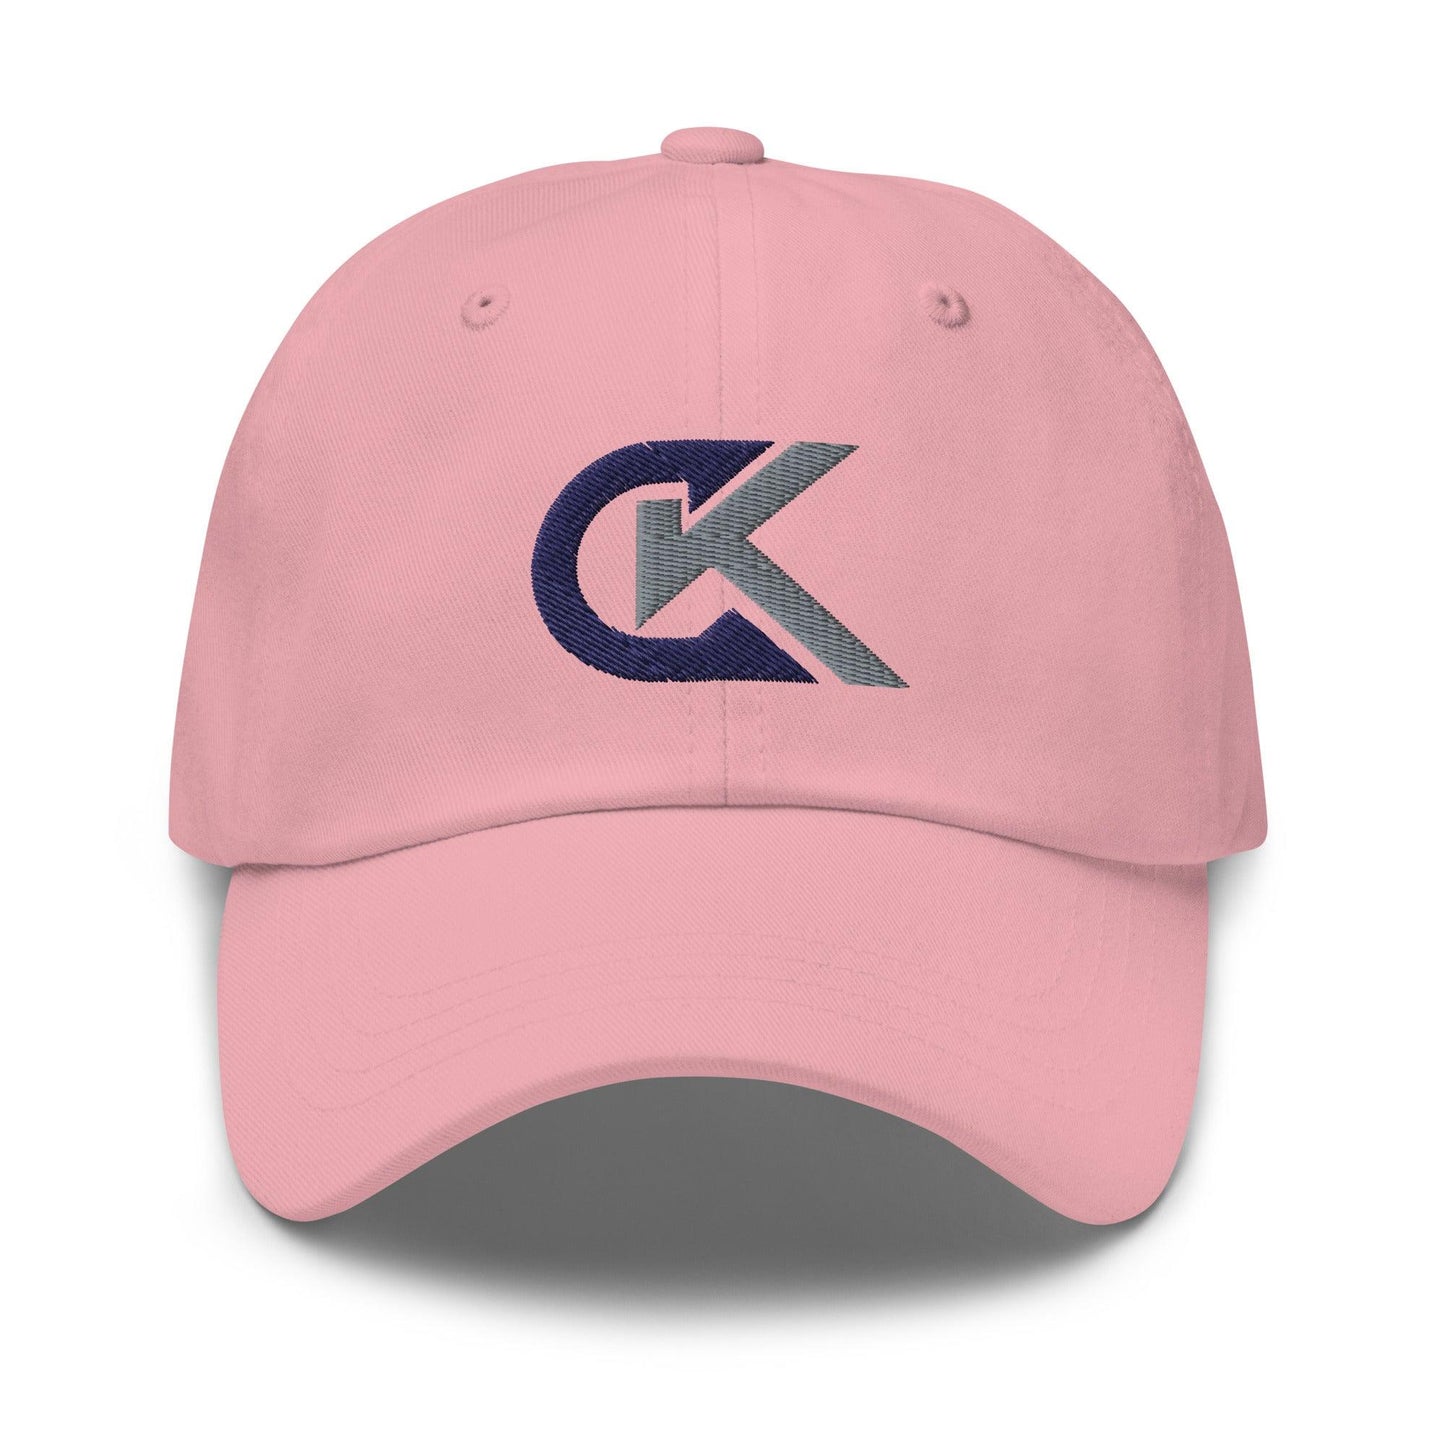 Corey Kluber "Elite" hat - Fan Arch